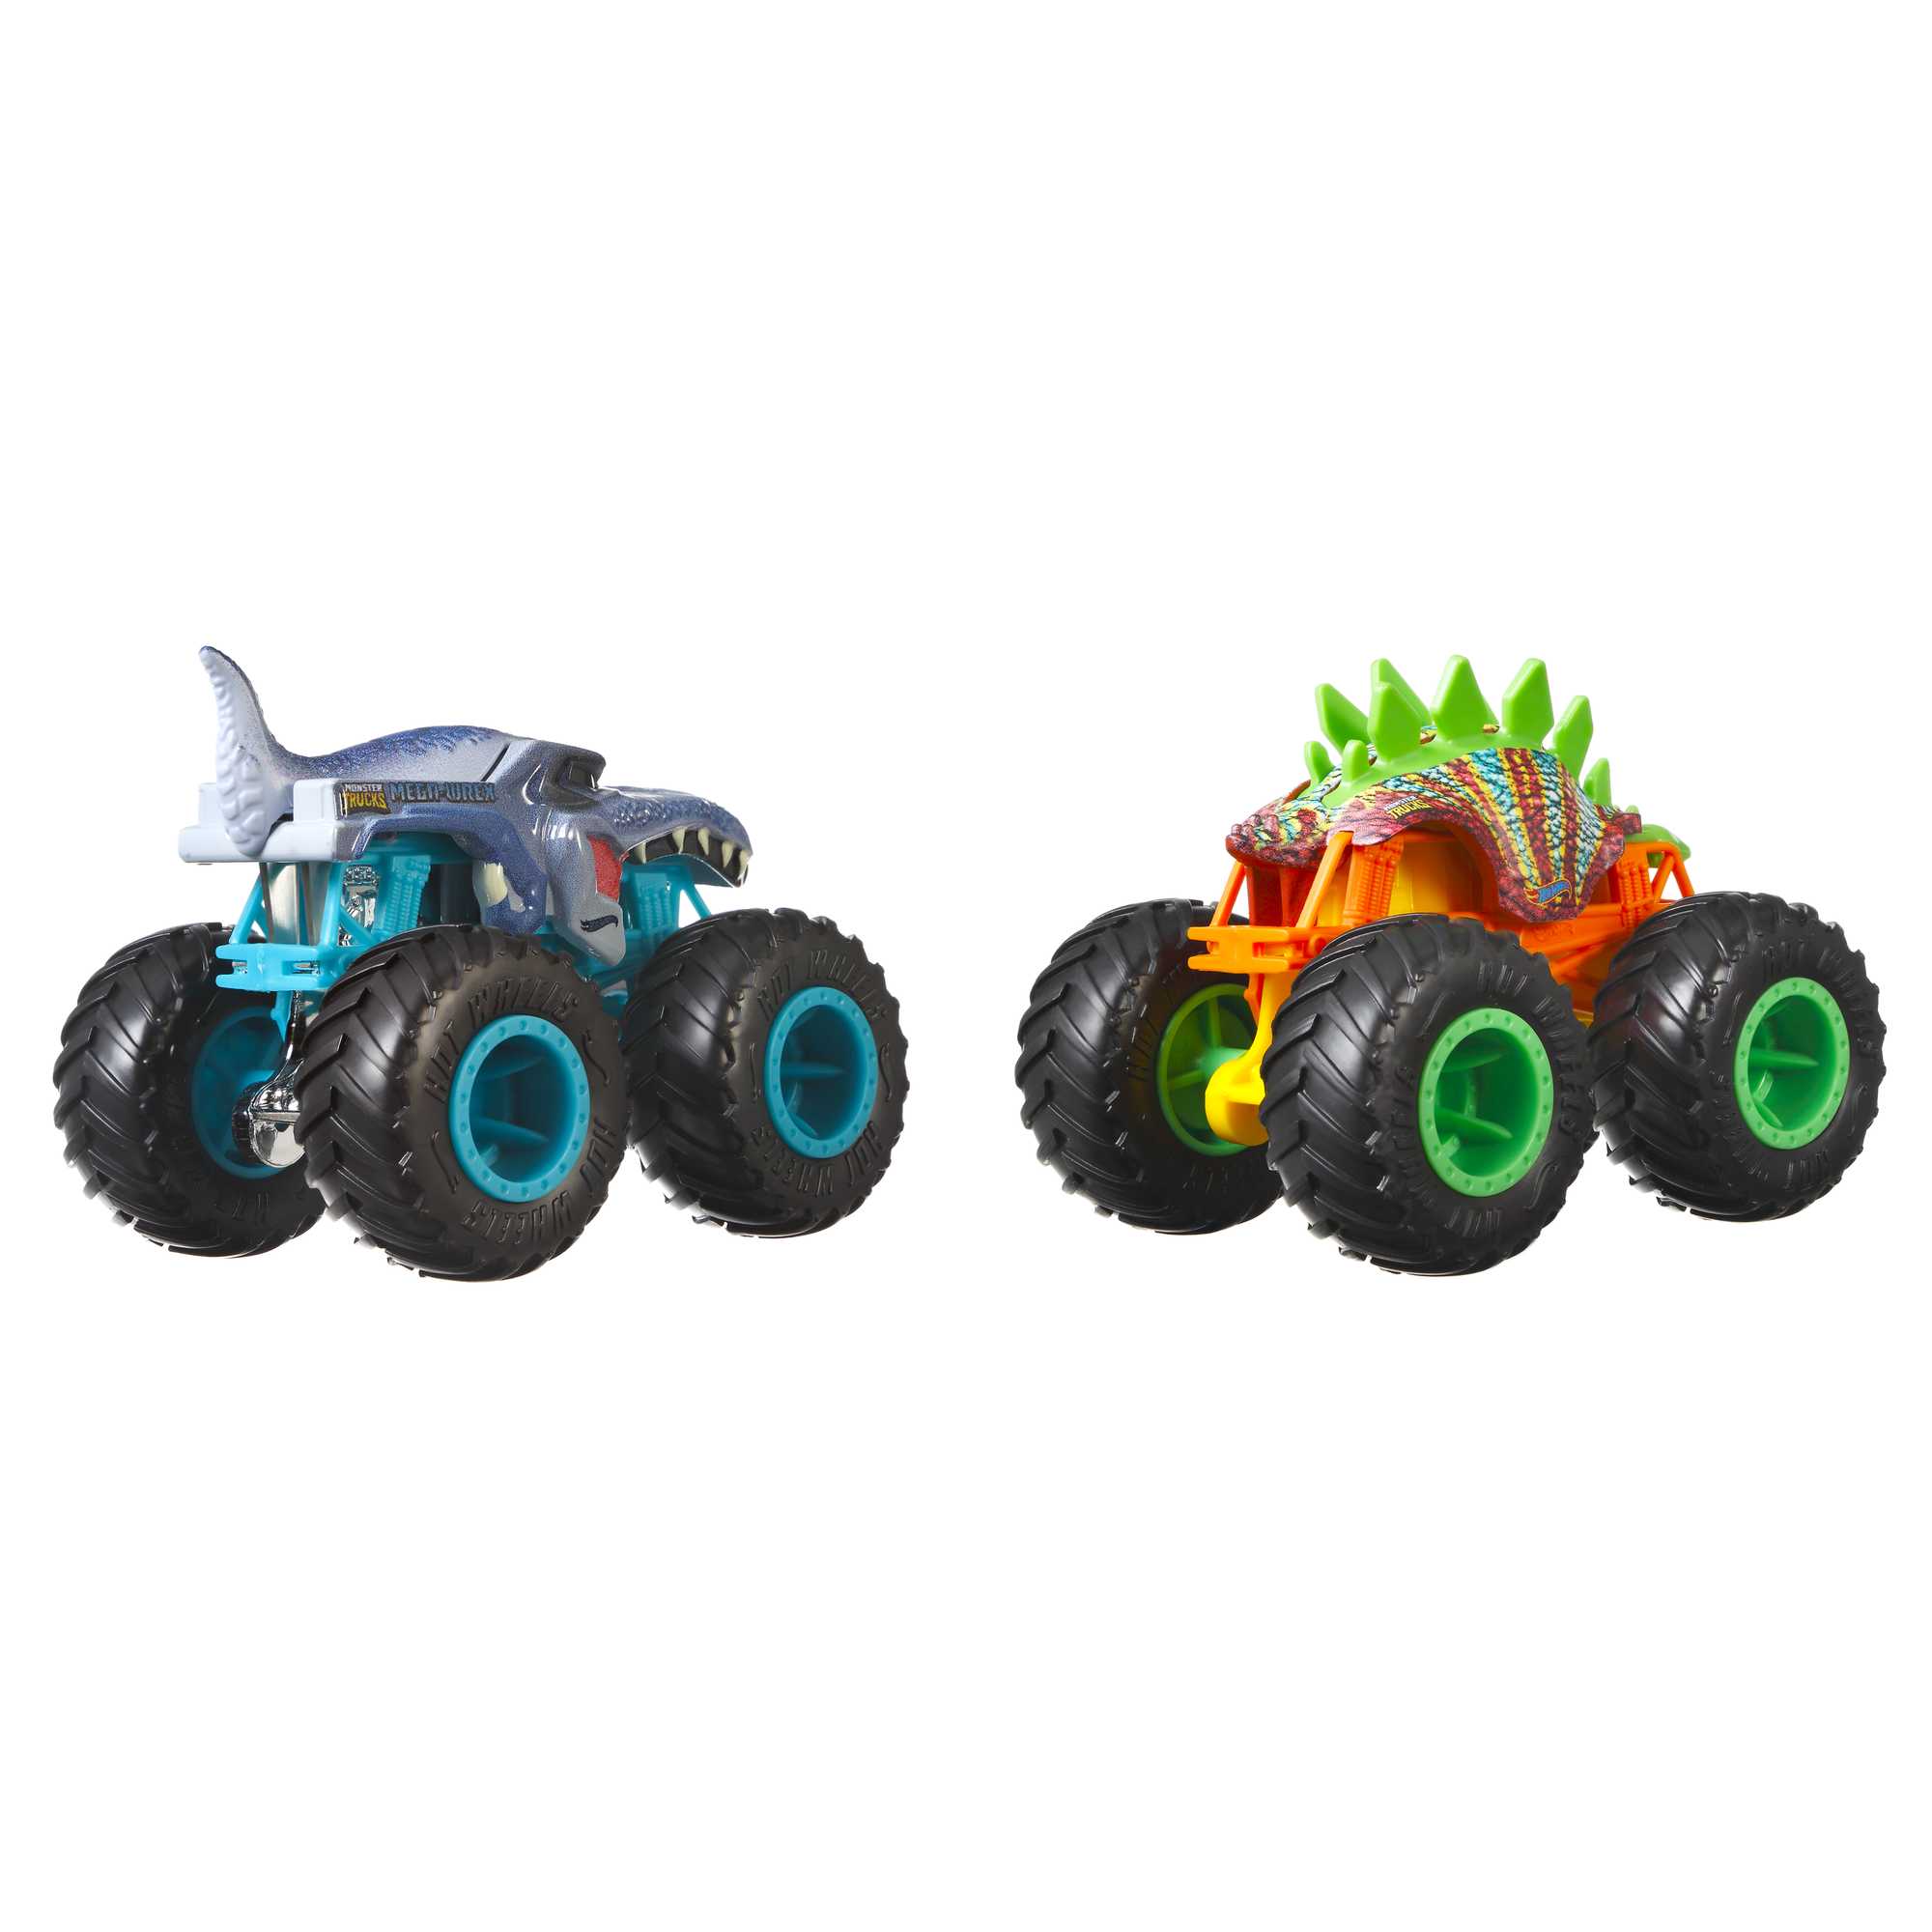 Hot Wheels - Monster Trucks 1:64 Scale 2-Packs FYJ64 – The